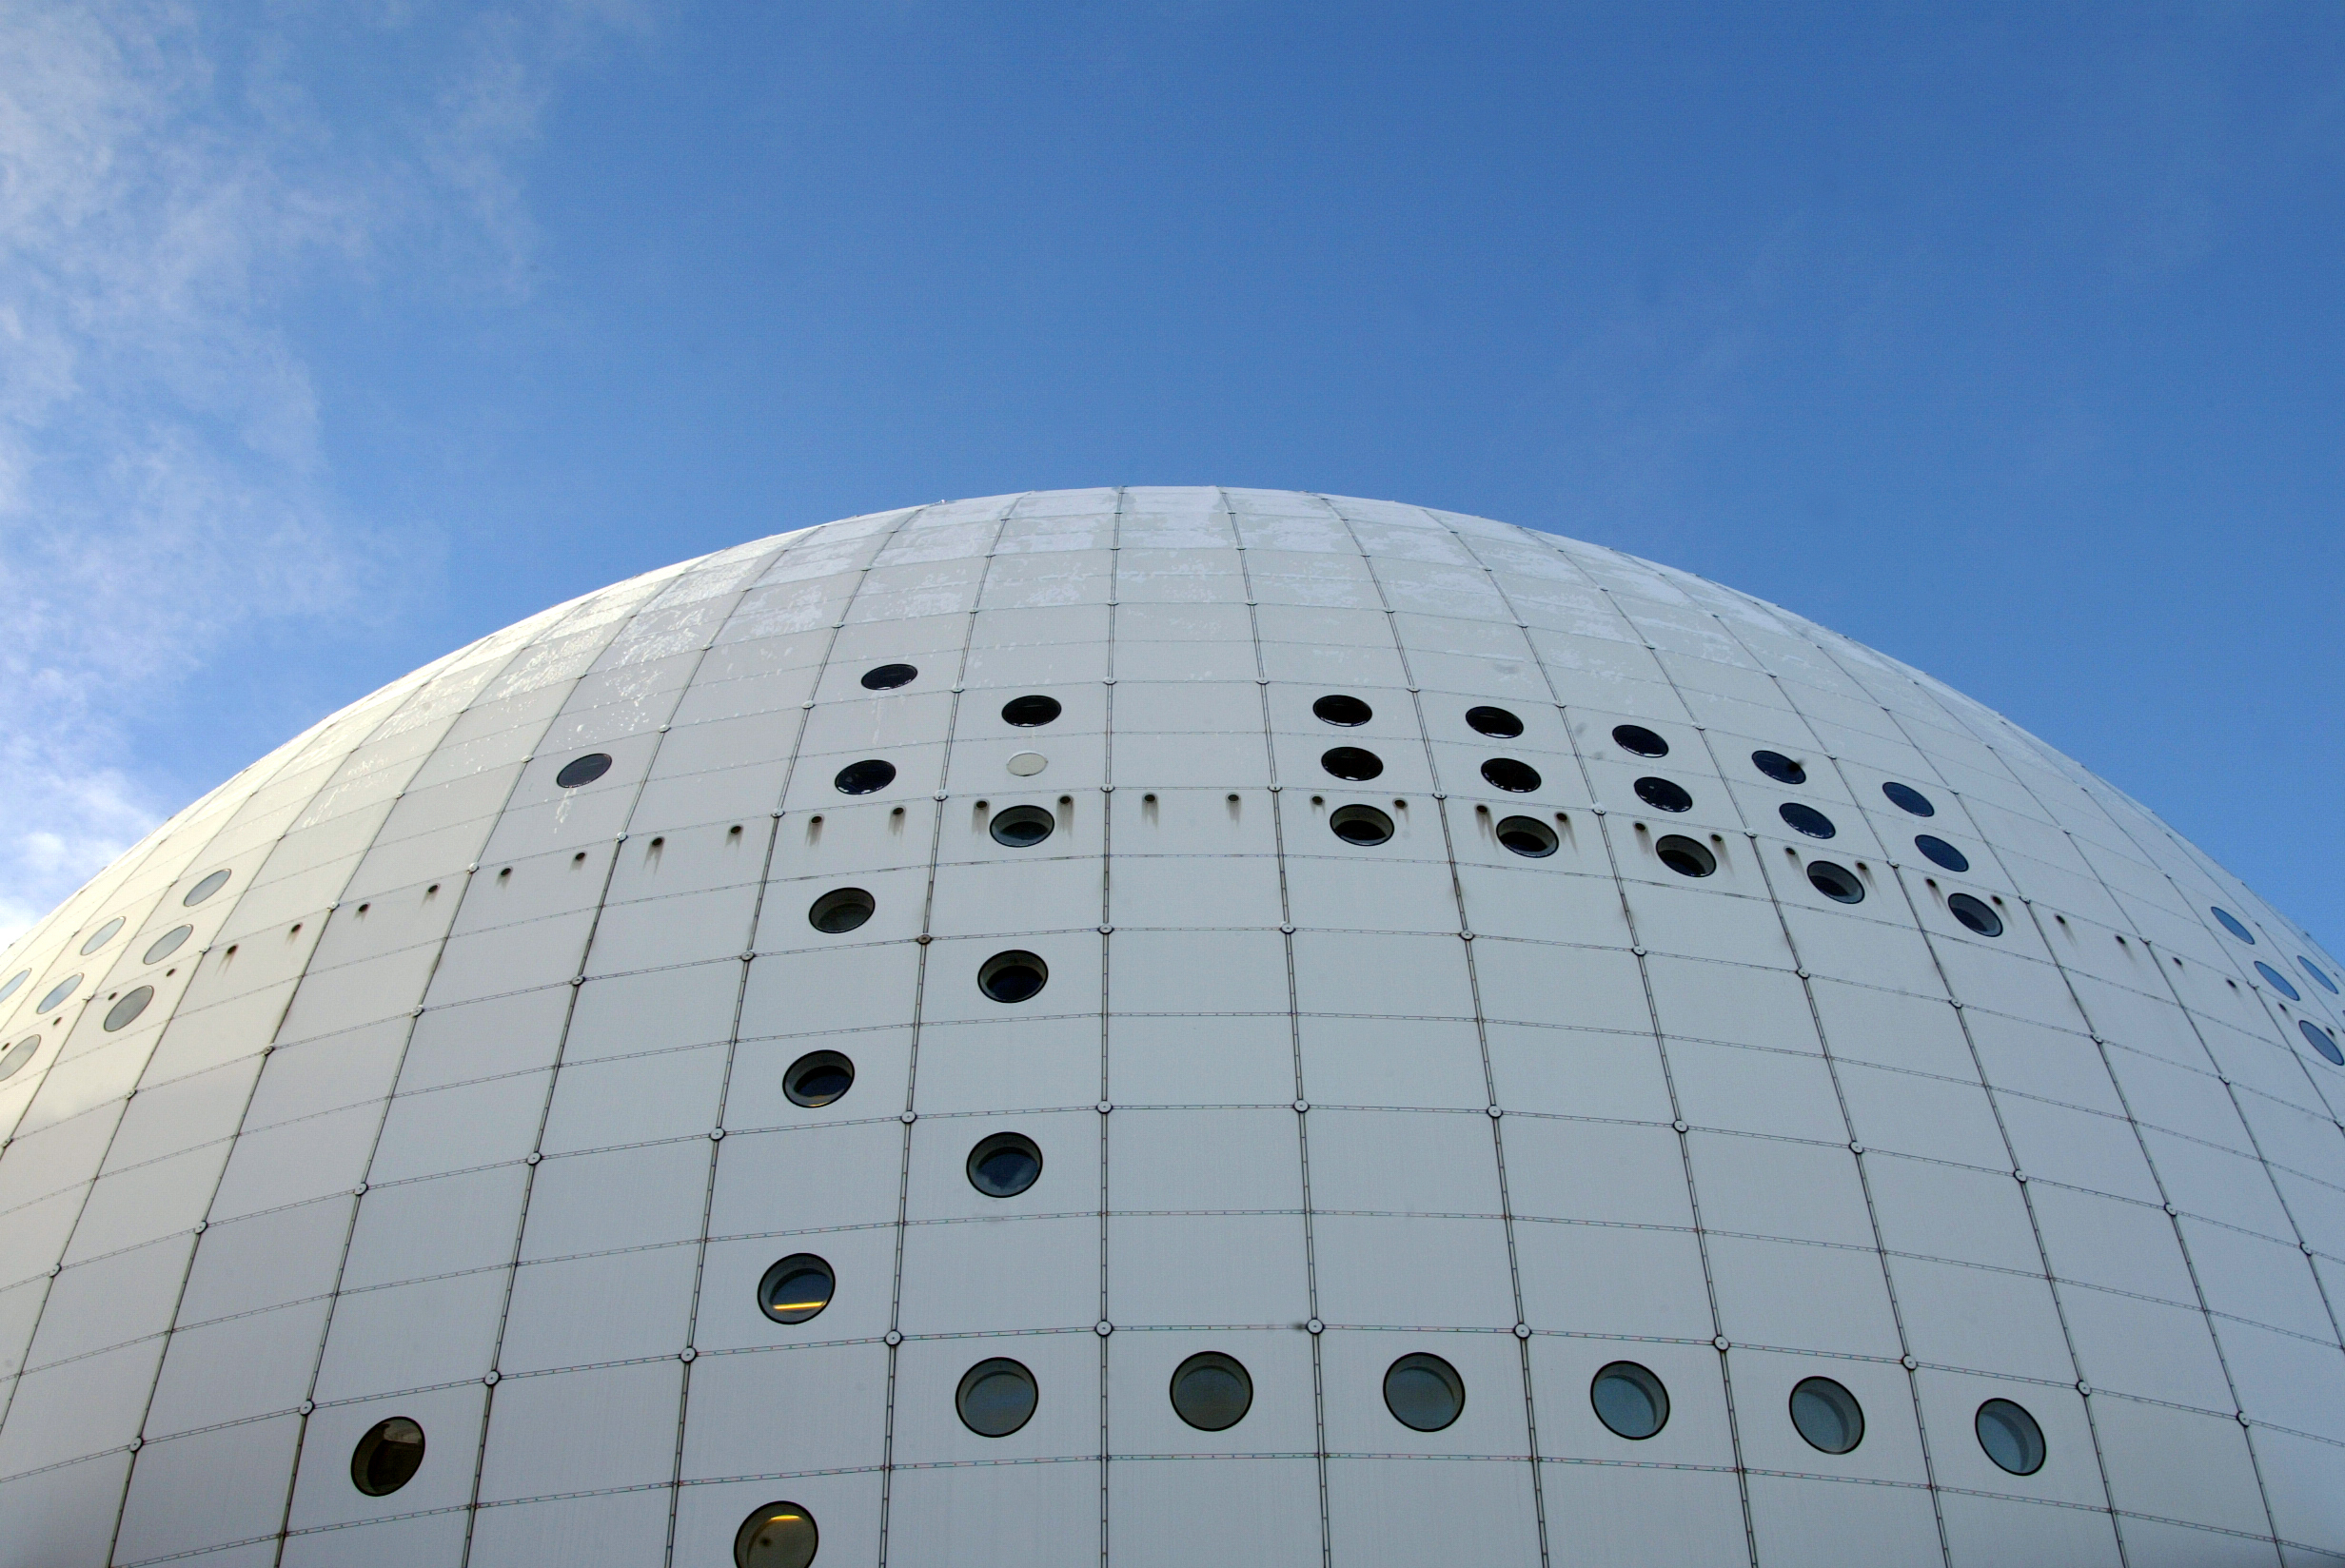 Globen är spelplats i Stockholm i kommande VM. På huvudorten Helsingfors är Hartwall Arena där det hela kommer avgöras. 